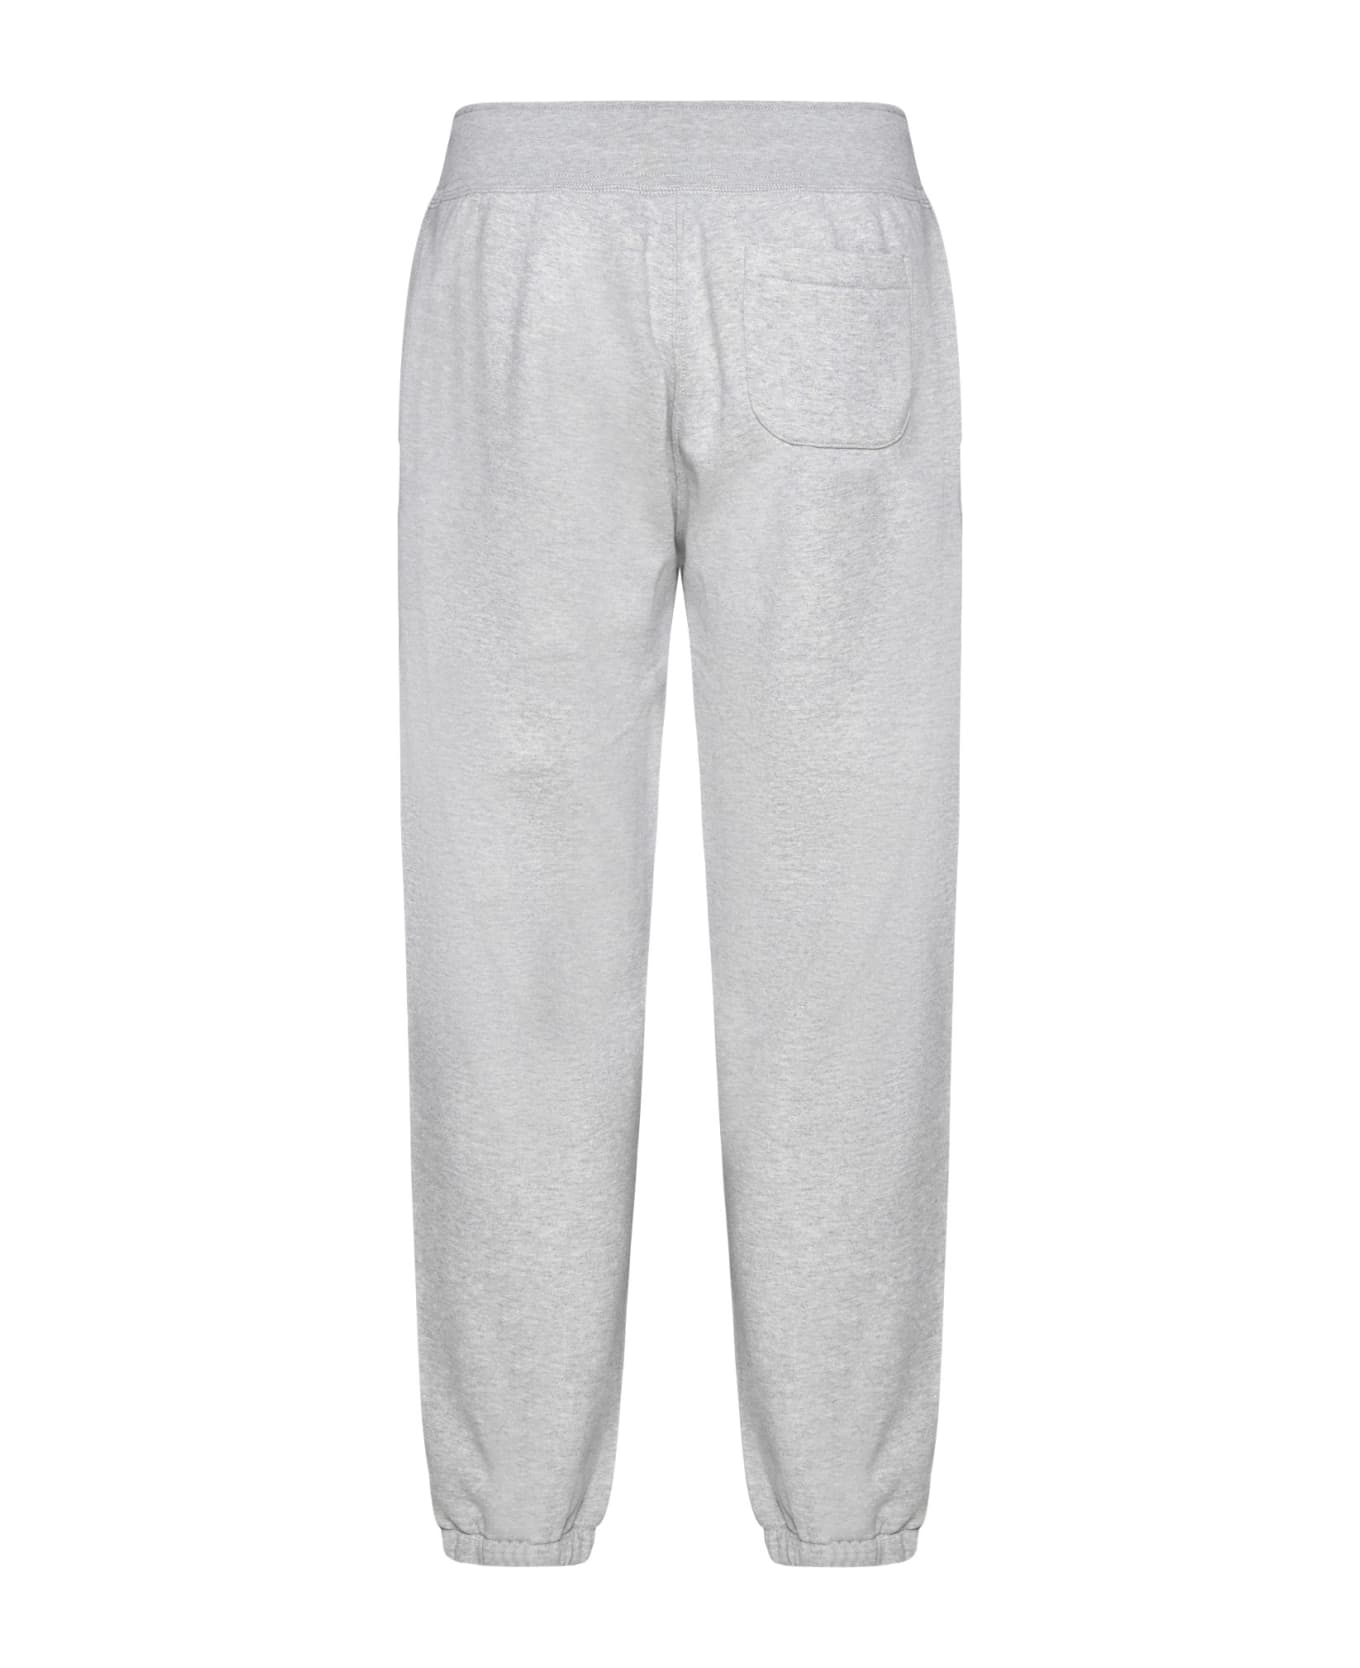 Polo Ralph Lauren Grey Cotton Blend Sporty Pants - Grey ボトムス